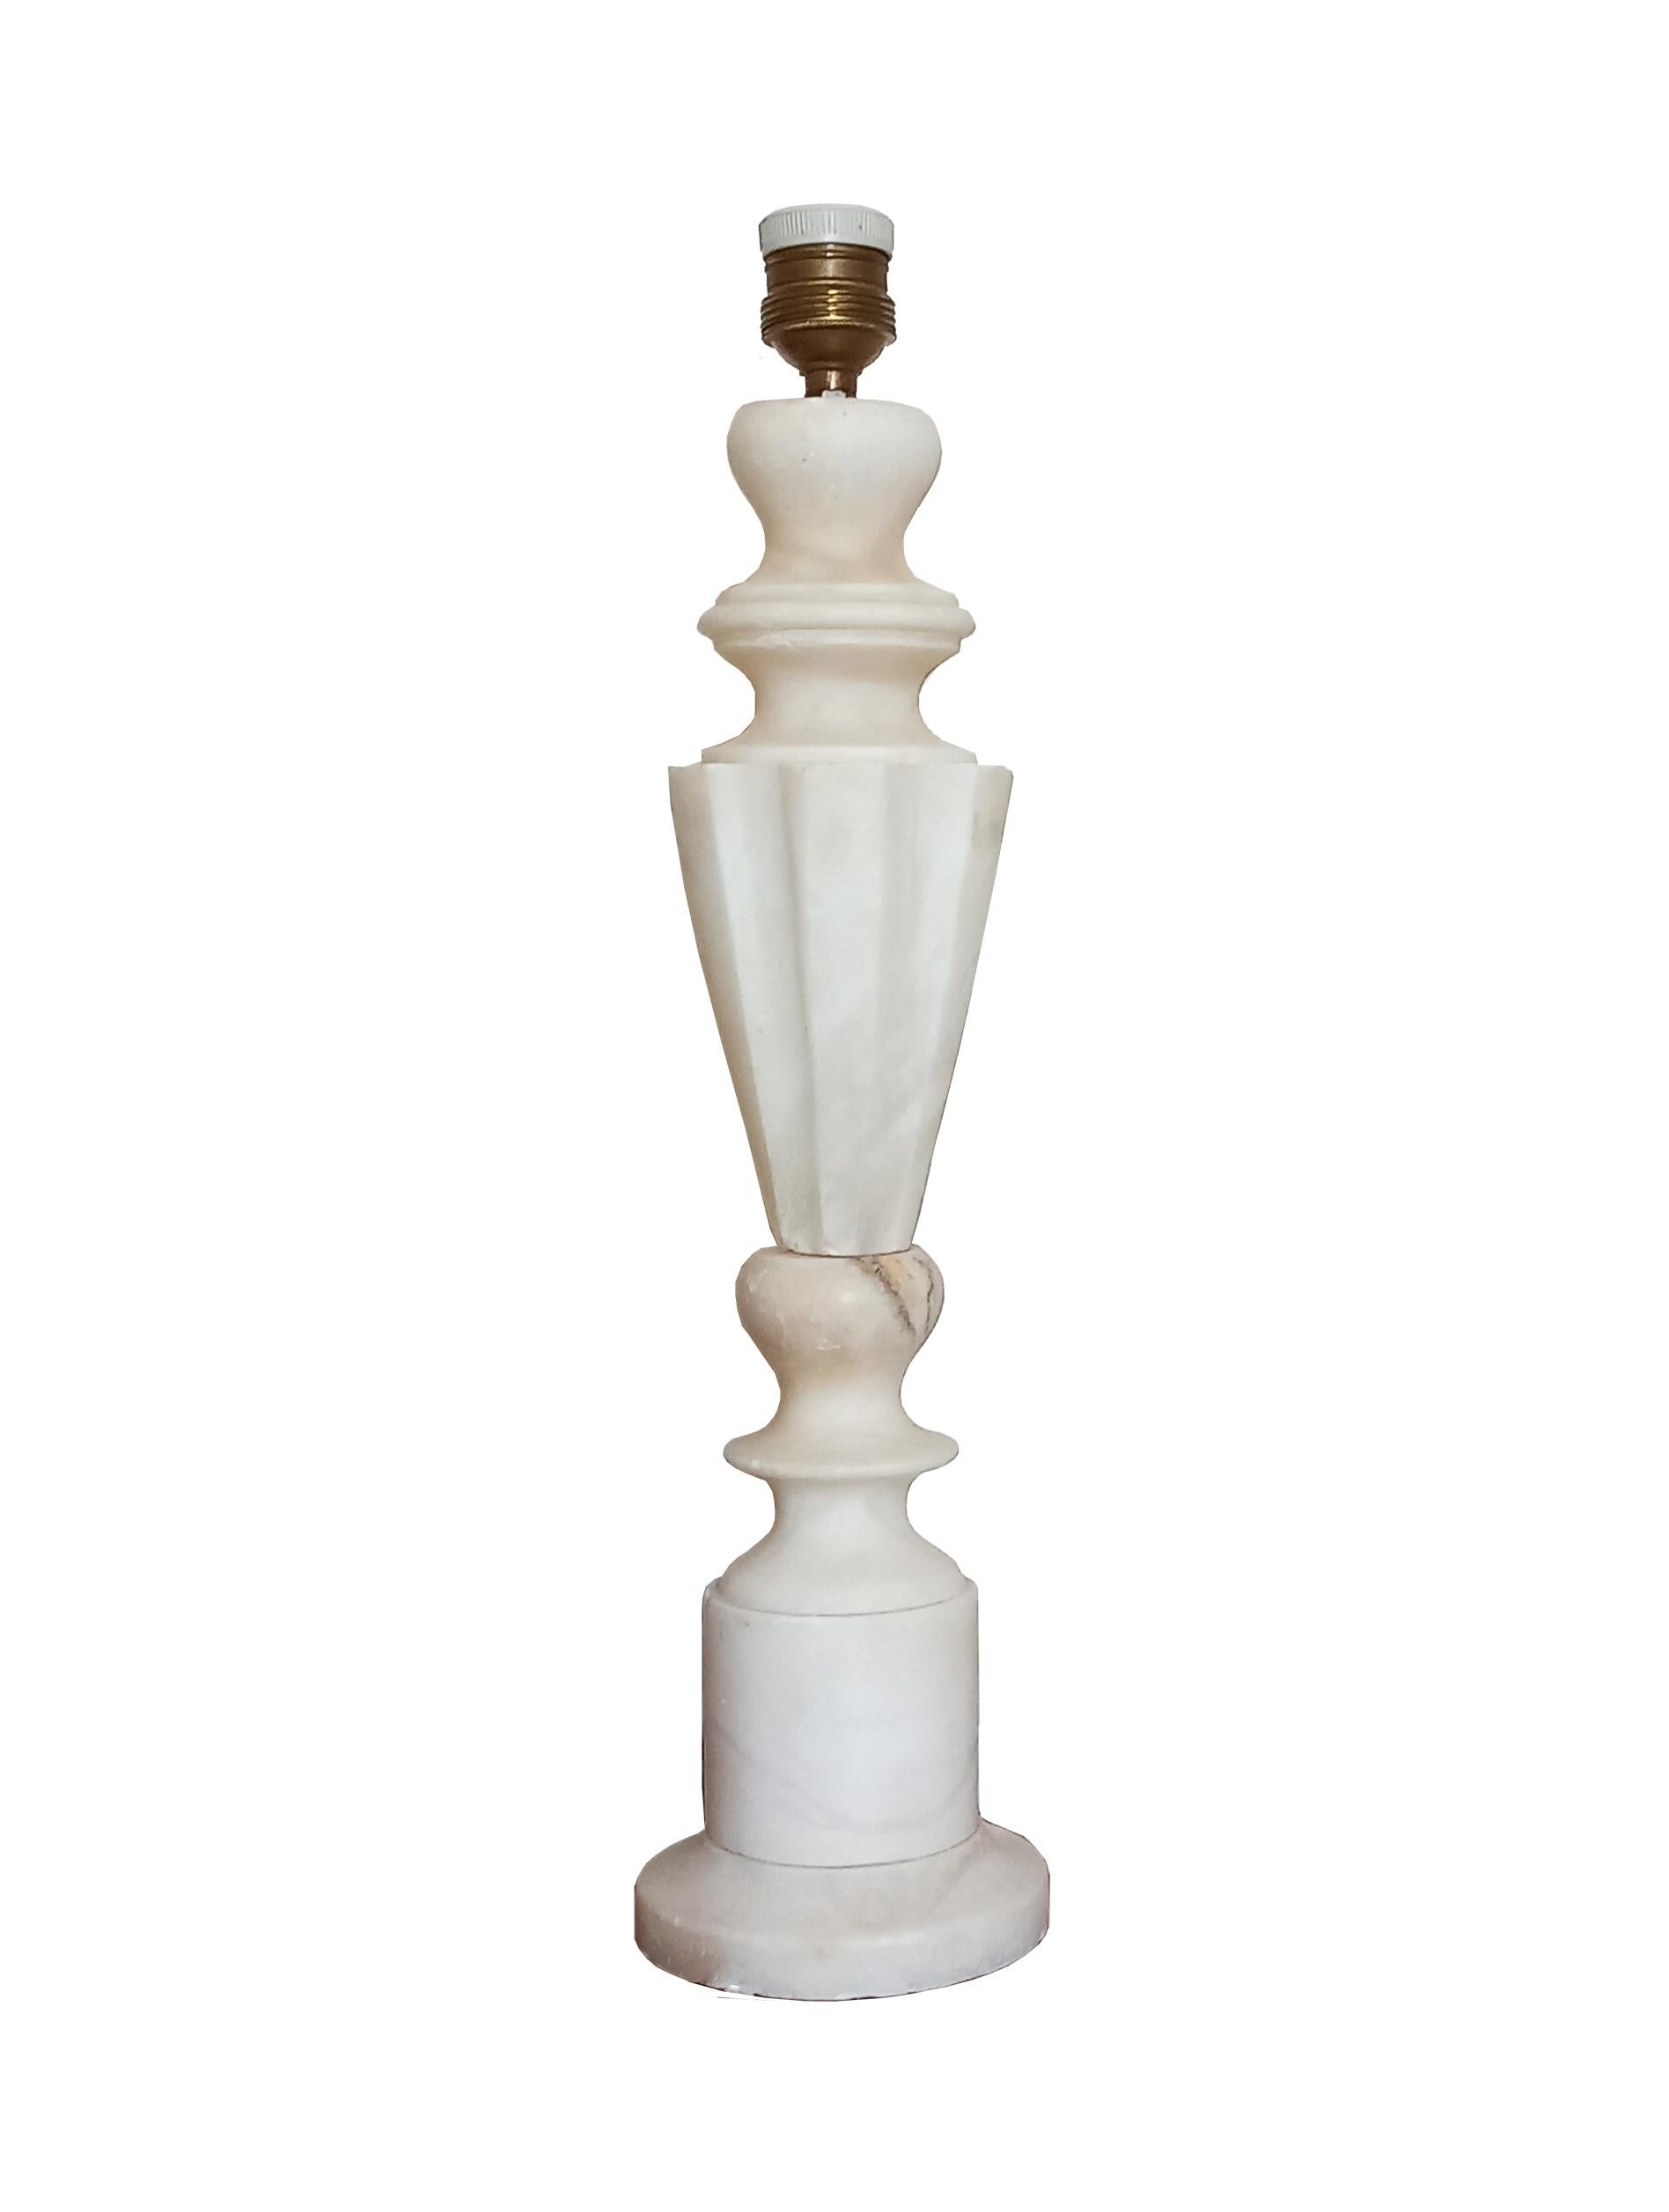 Excellentes conditions, comme neuf
Paire de grandes lampes en albâtre ou en marbre blanc.
Il s'agit de deux lampes en albâtre blanc ou en marbre d'origine espagnole ou italienne. Il a la forme de deux grandes colonnes en forme de lampe.
Ce sont des